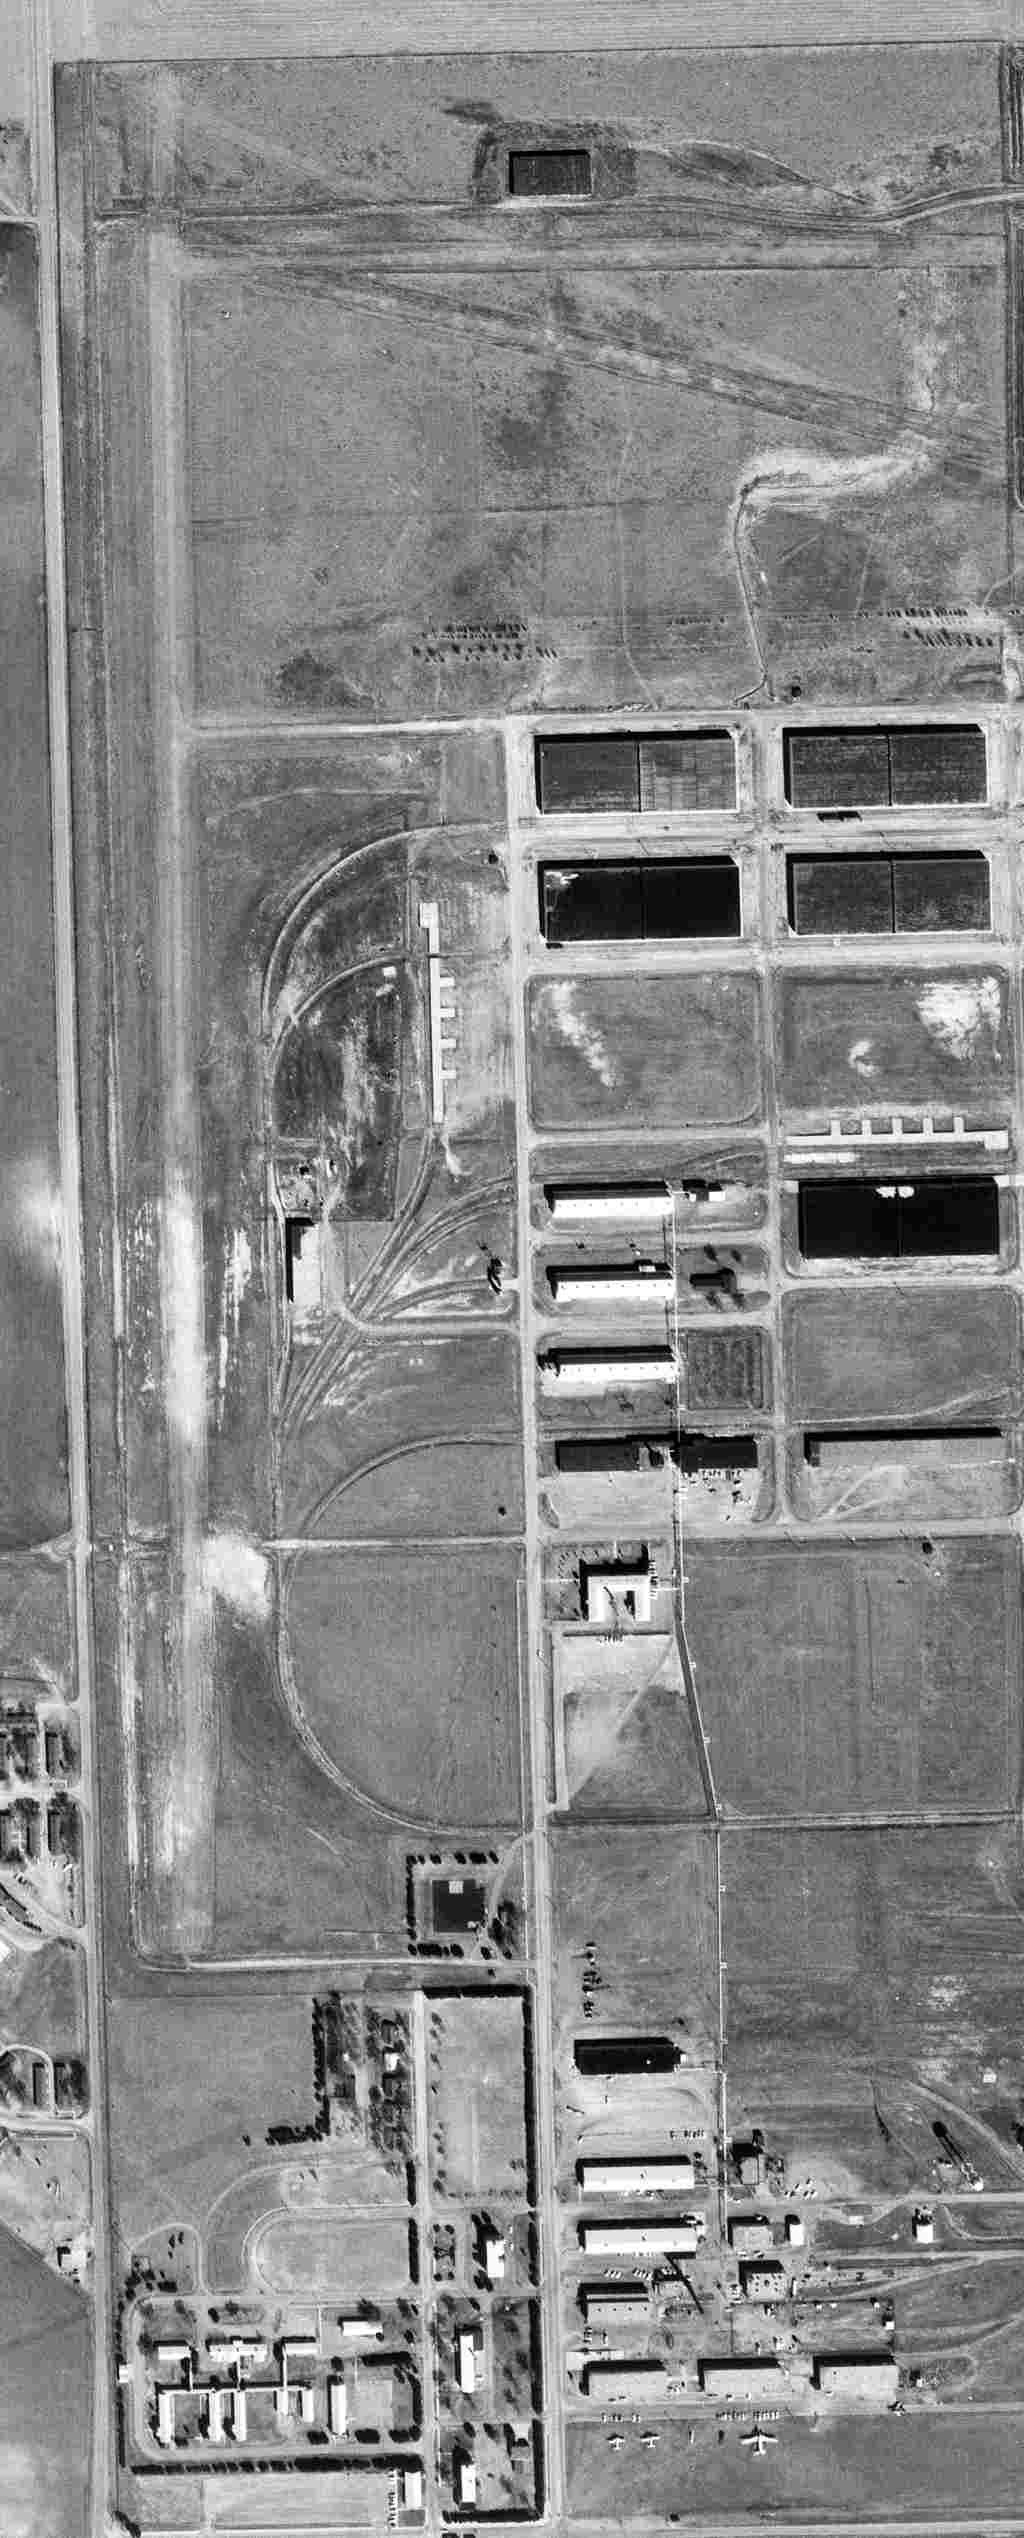 Abandoned & Little-Known Airfields: Western Nebraska